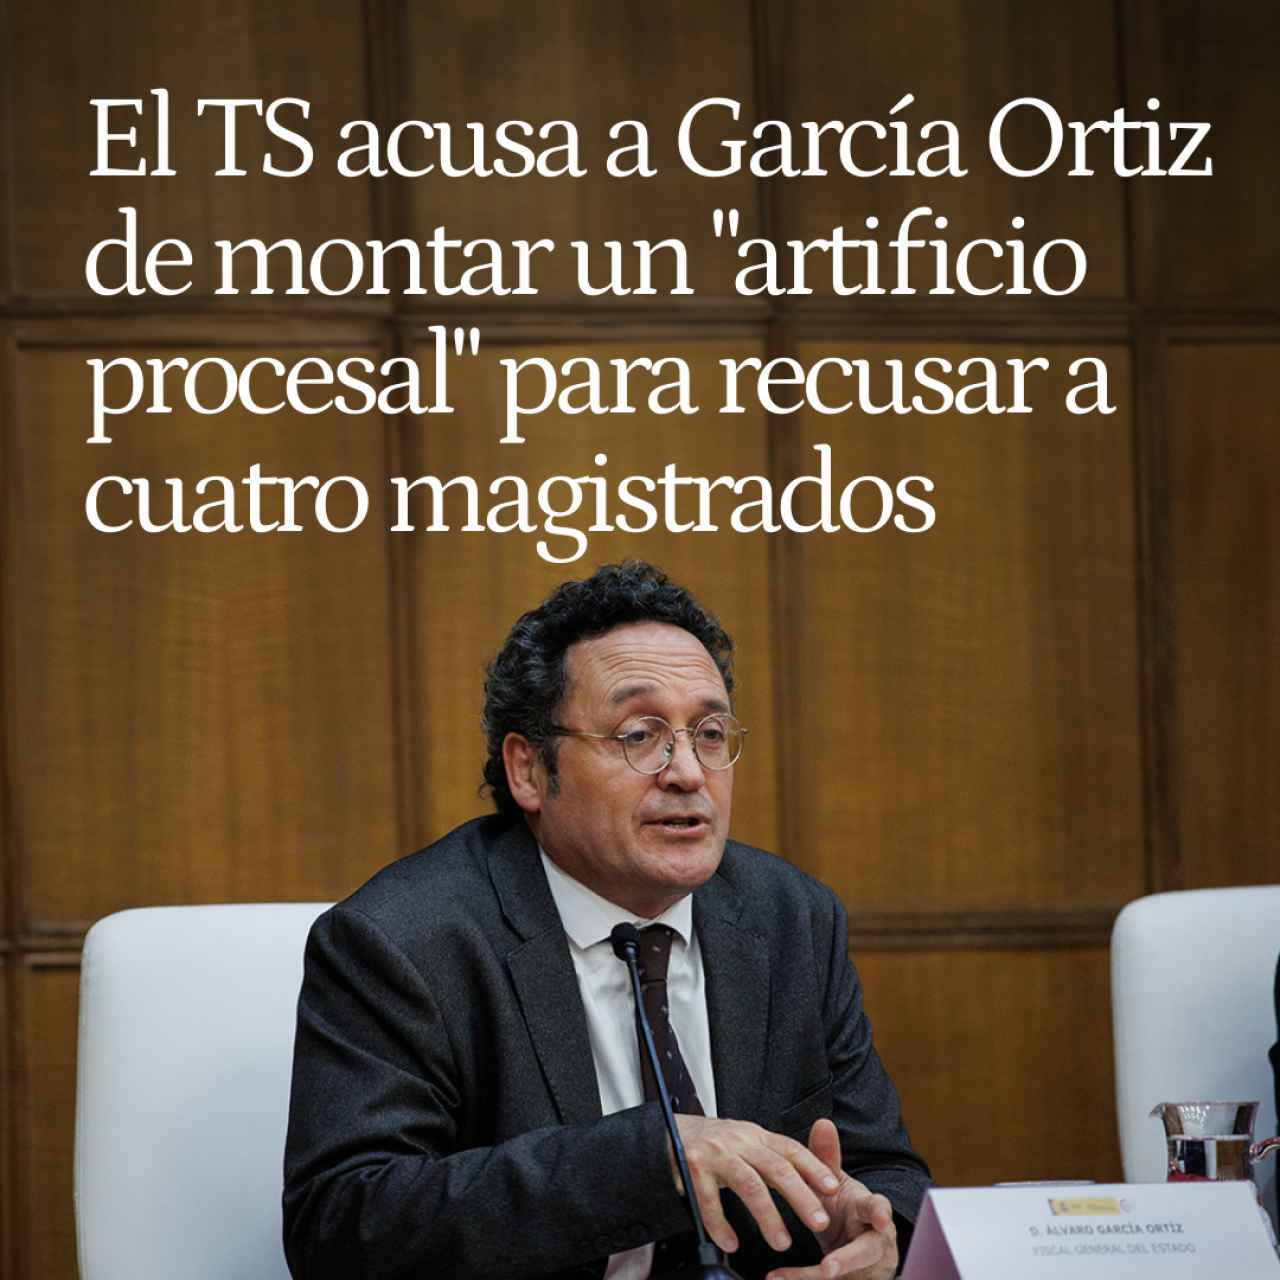 El TS acusa a García Ortiz de montar un "artificio procesal" para recusar a cuatro magistrados